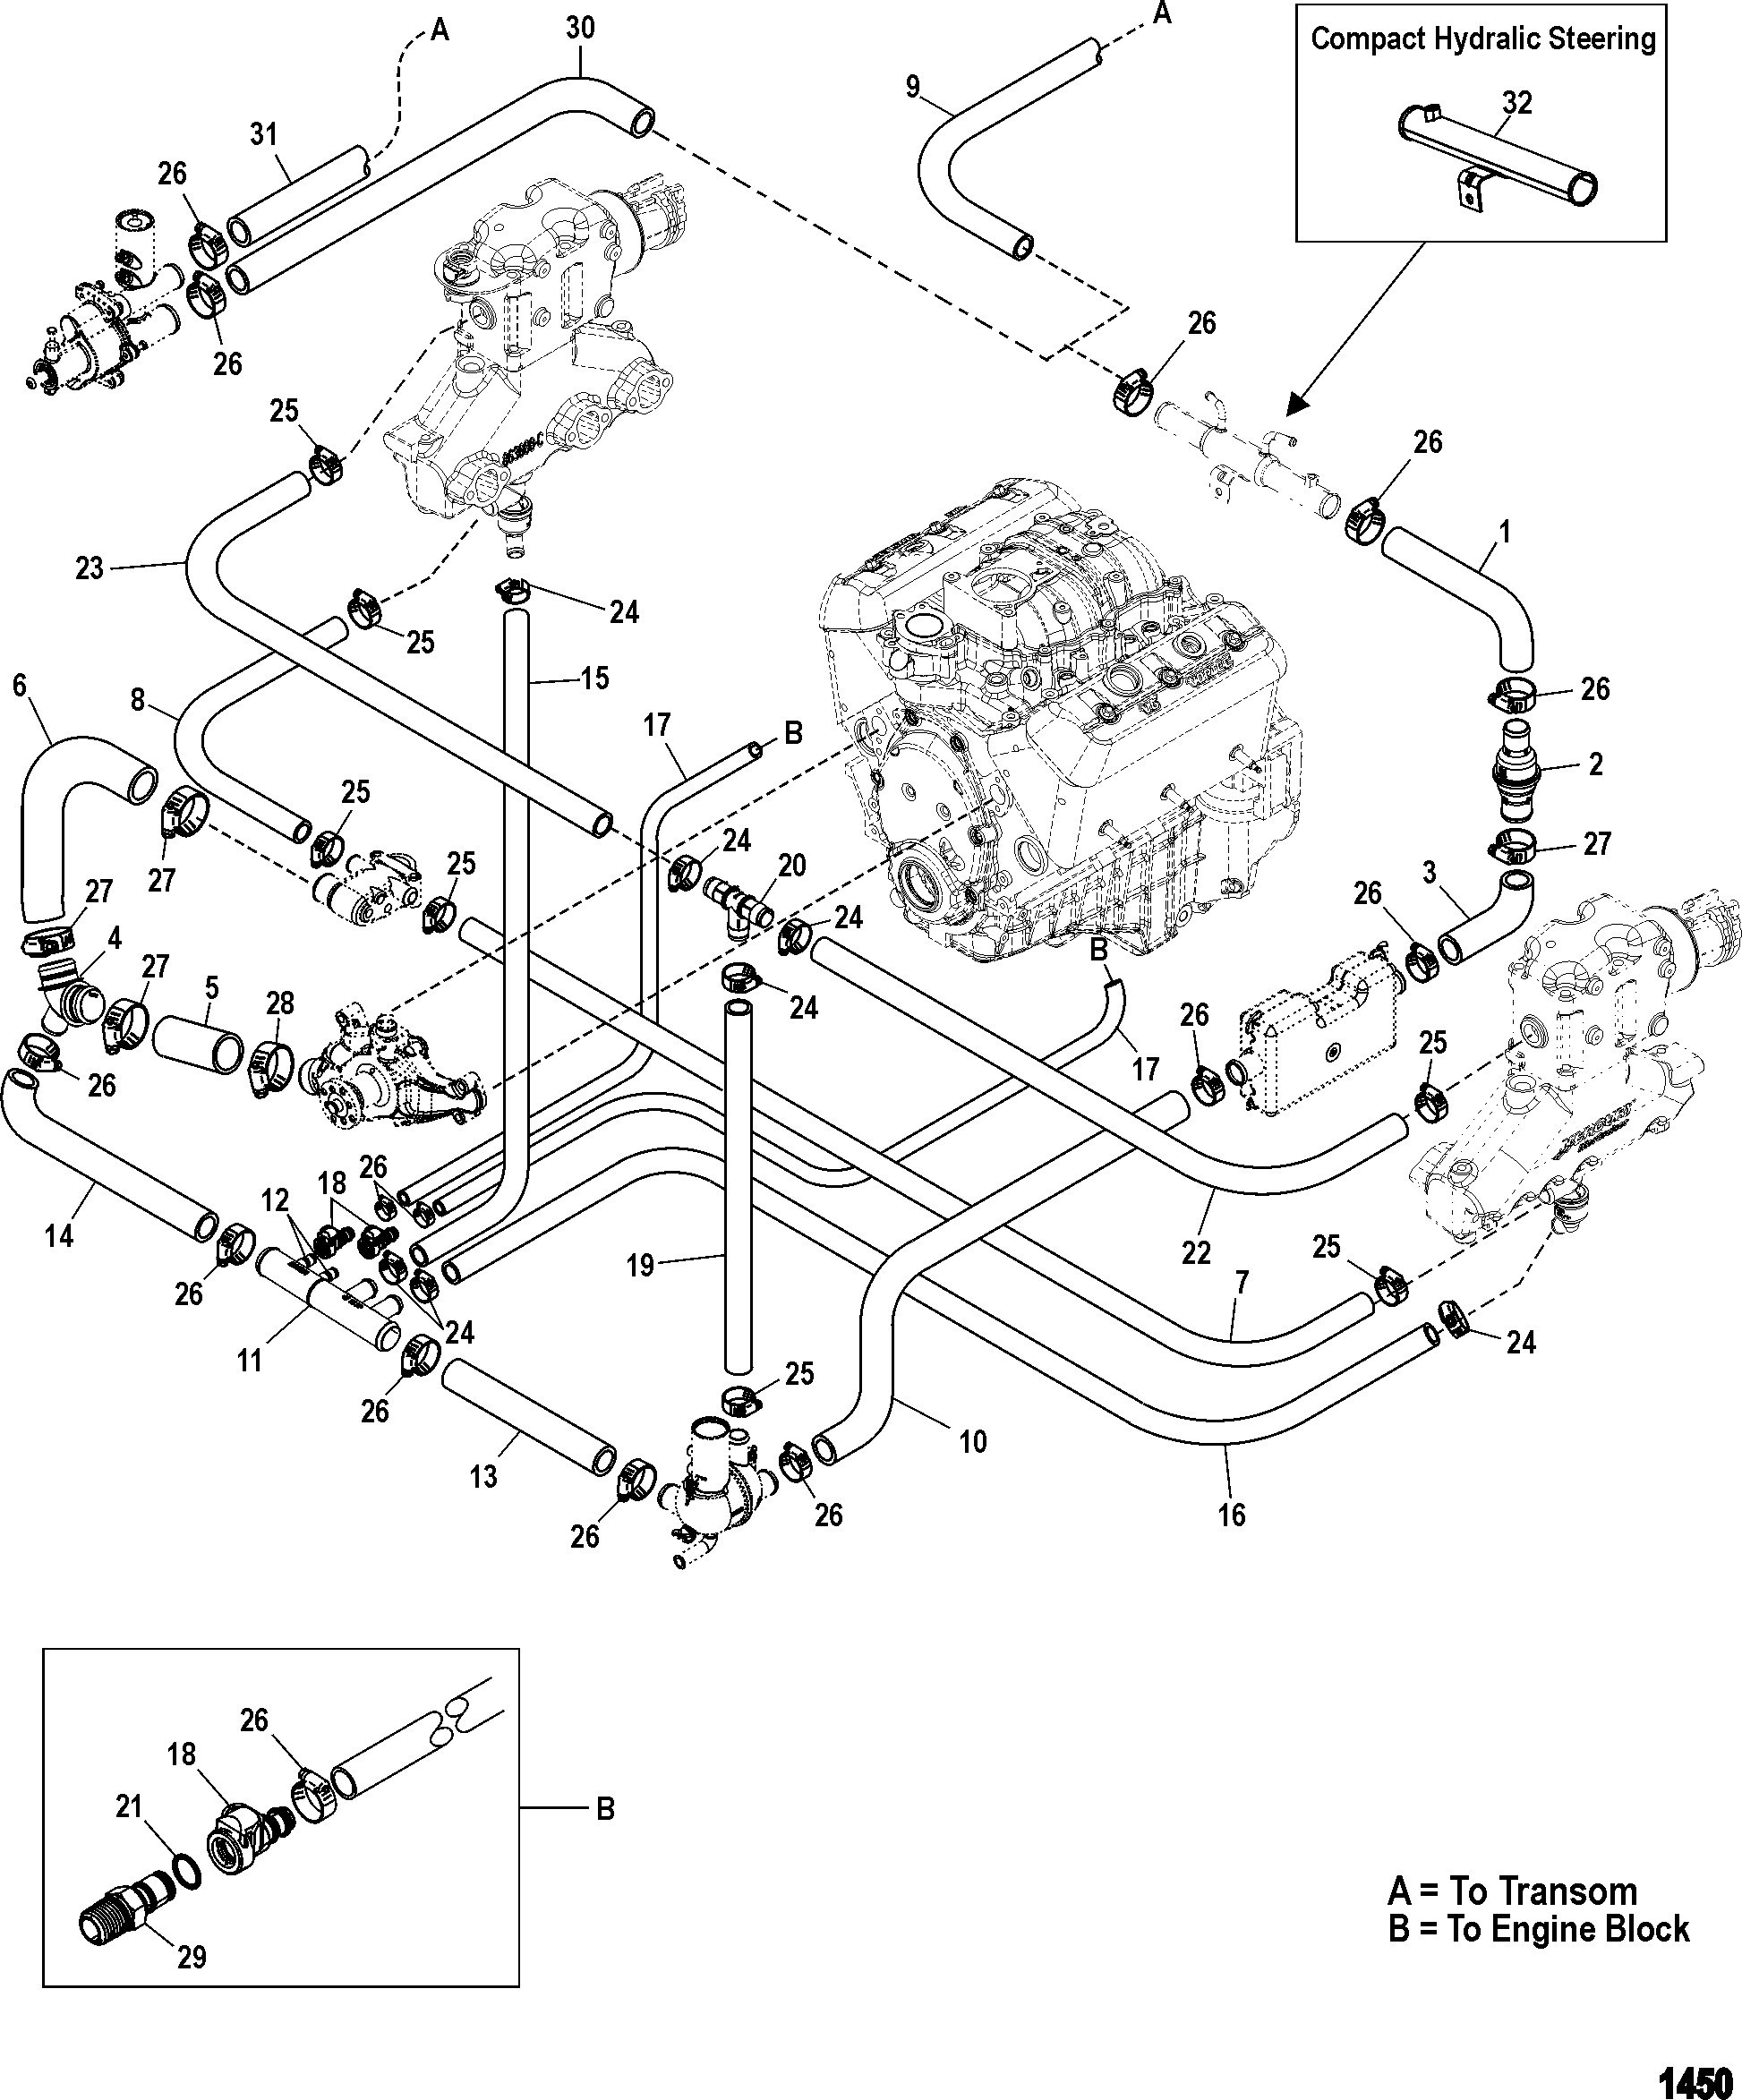 4 3 Vortec Engine Wiring Diagram Full Hd Version Wiring Diagram Lyse Diagram Tacchettidiferro It